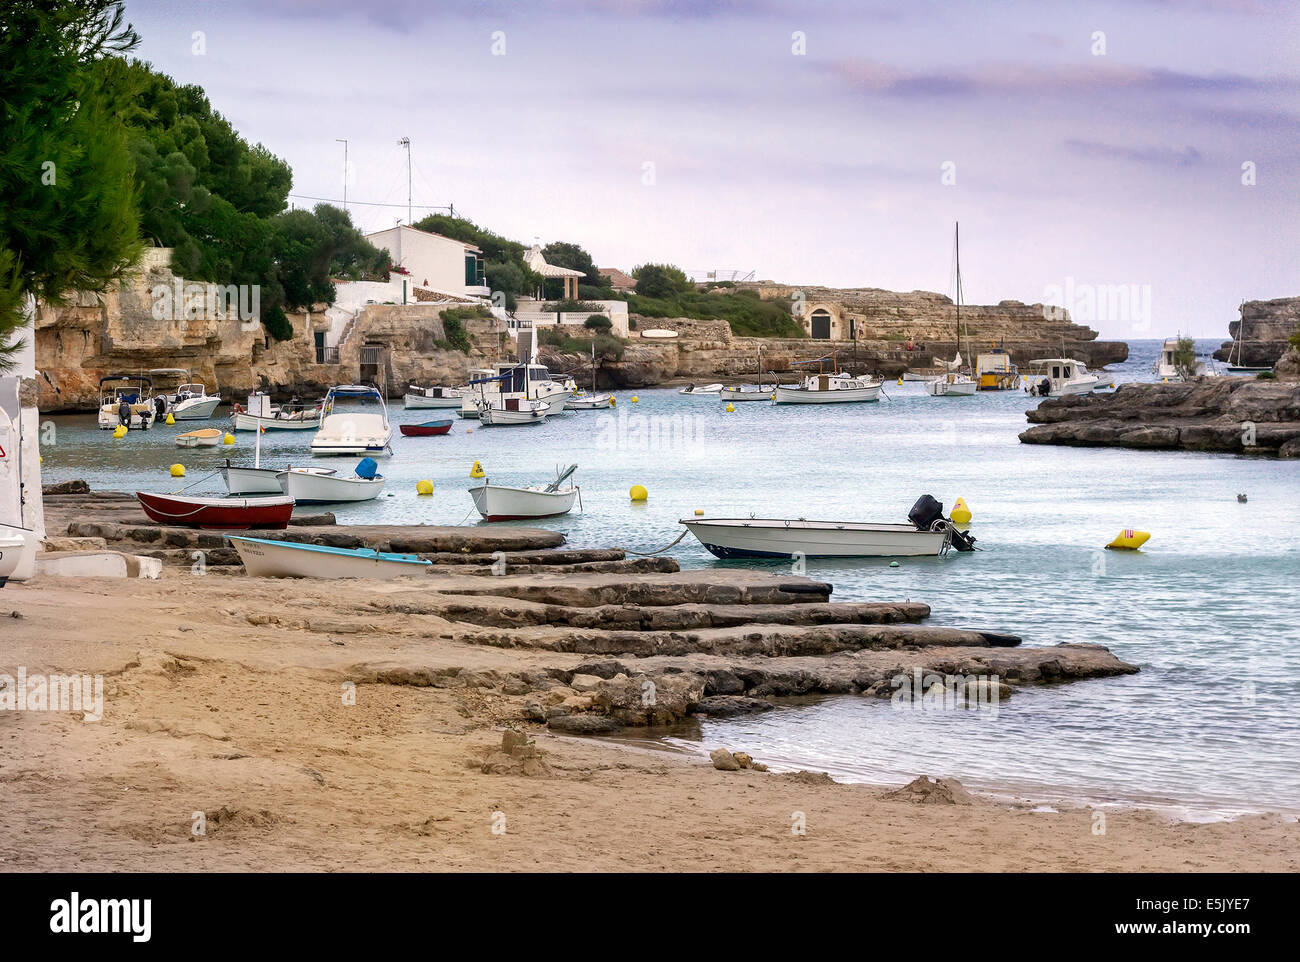 Barche su un mare loch, Menorca. Isole Baleari (Spagna) Foto Stock